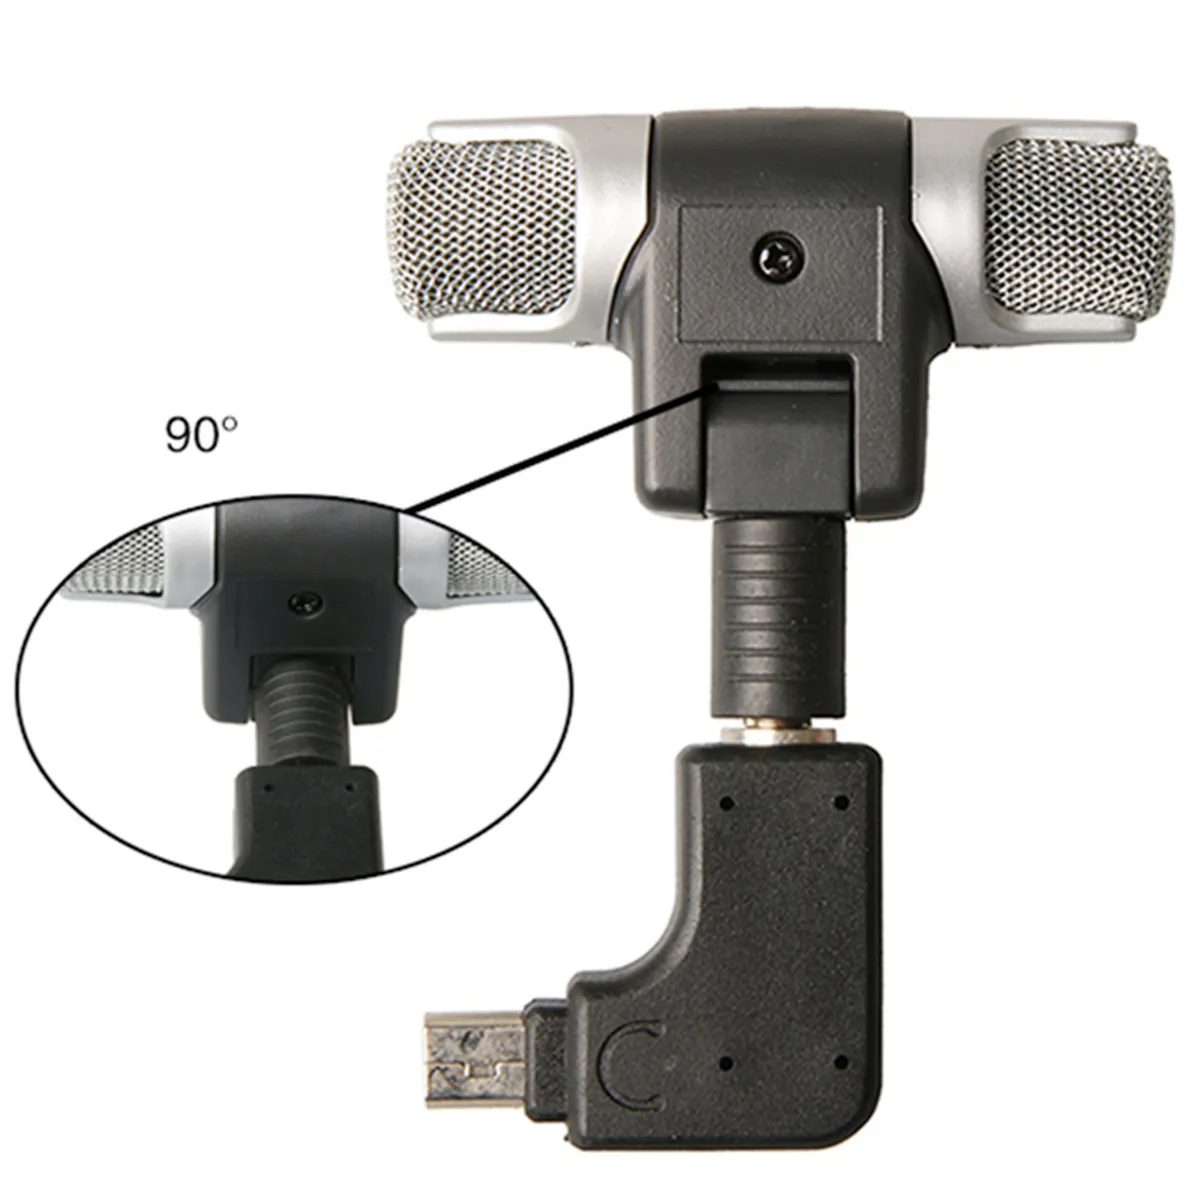 Камера аксессуар корпус оболочка корпуса протектор внешний микрофон+ Адаптер Стандартный рамки комплект подходит для GoPr Hero 4 3